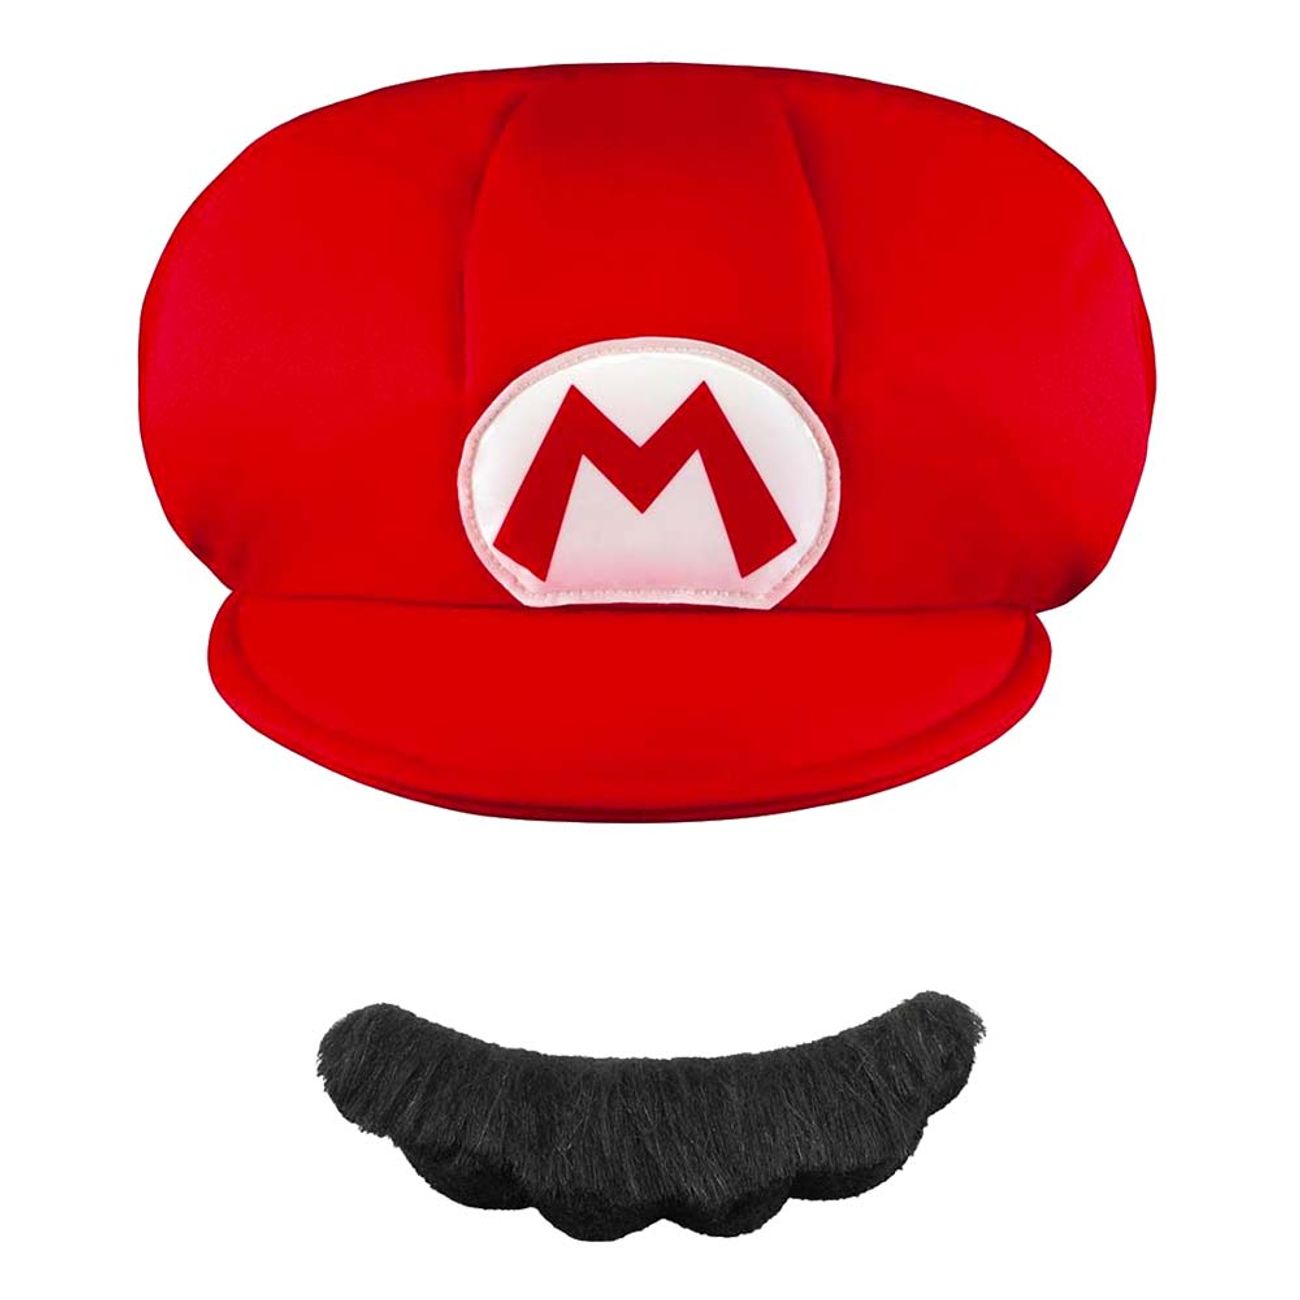 super-mario-hatt-mustasch-92600-2